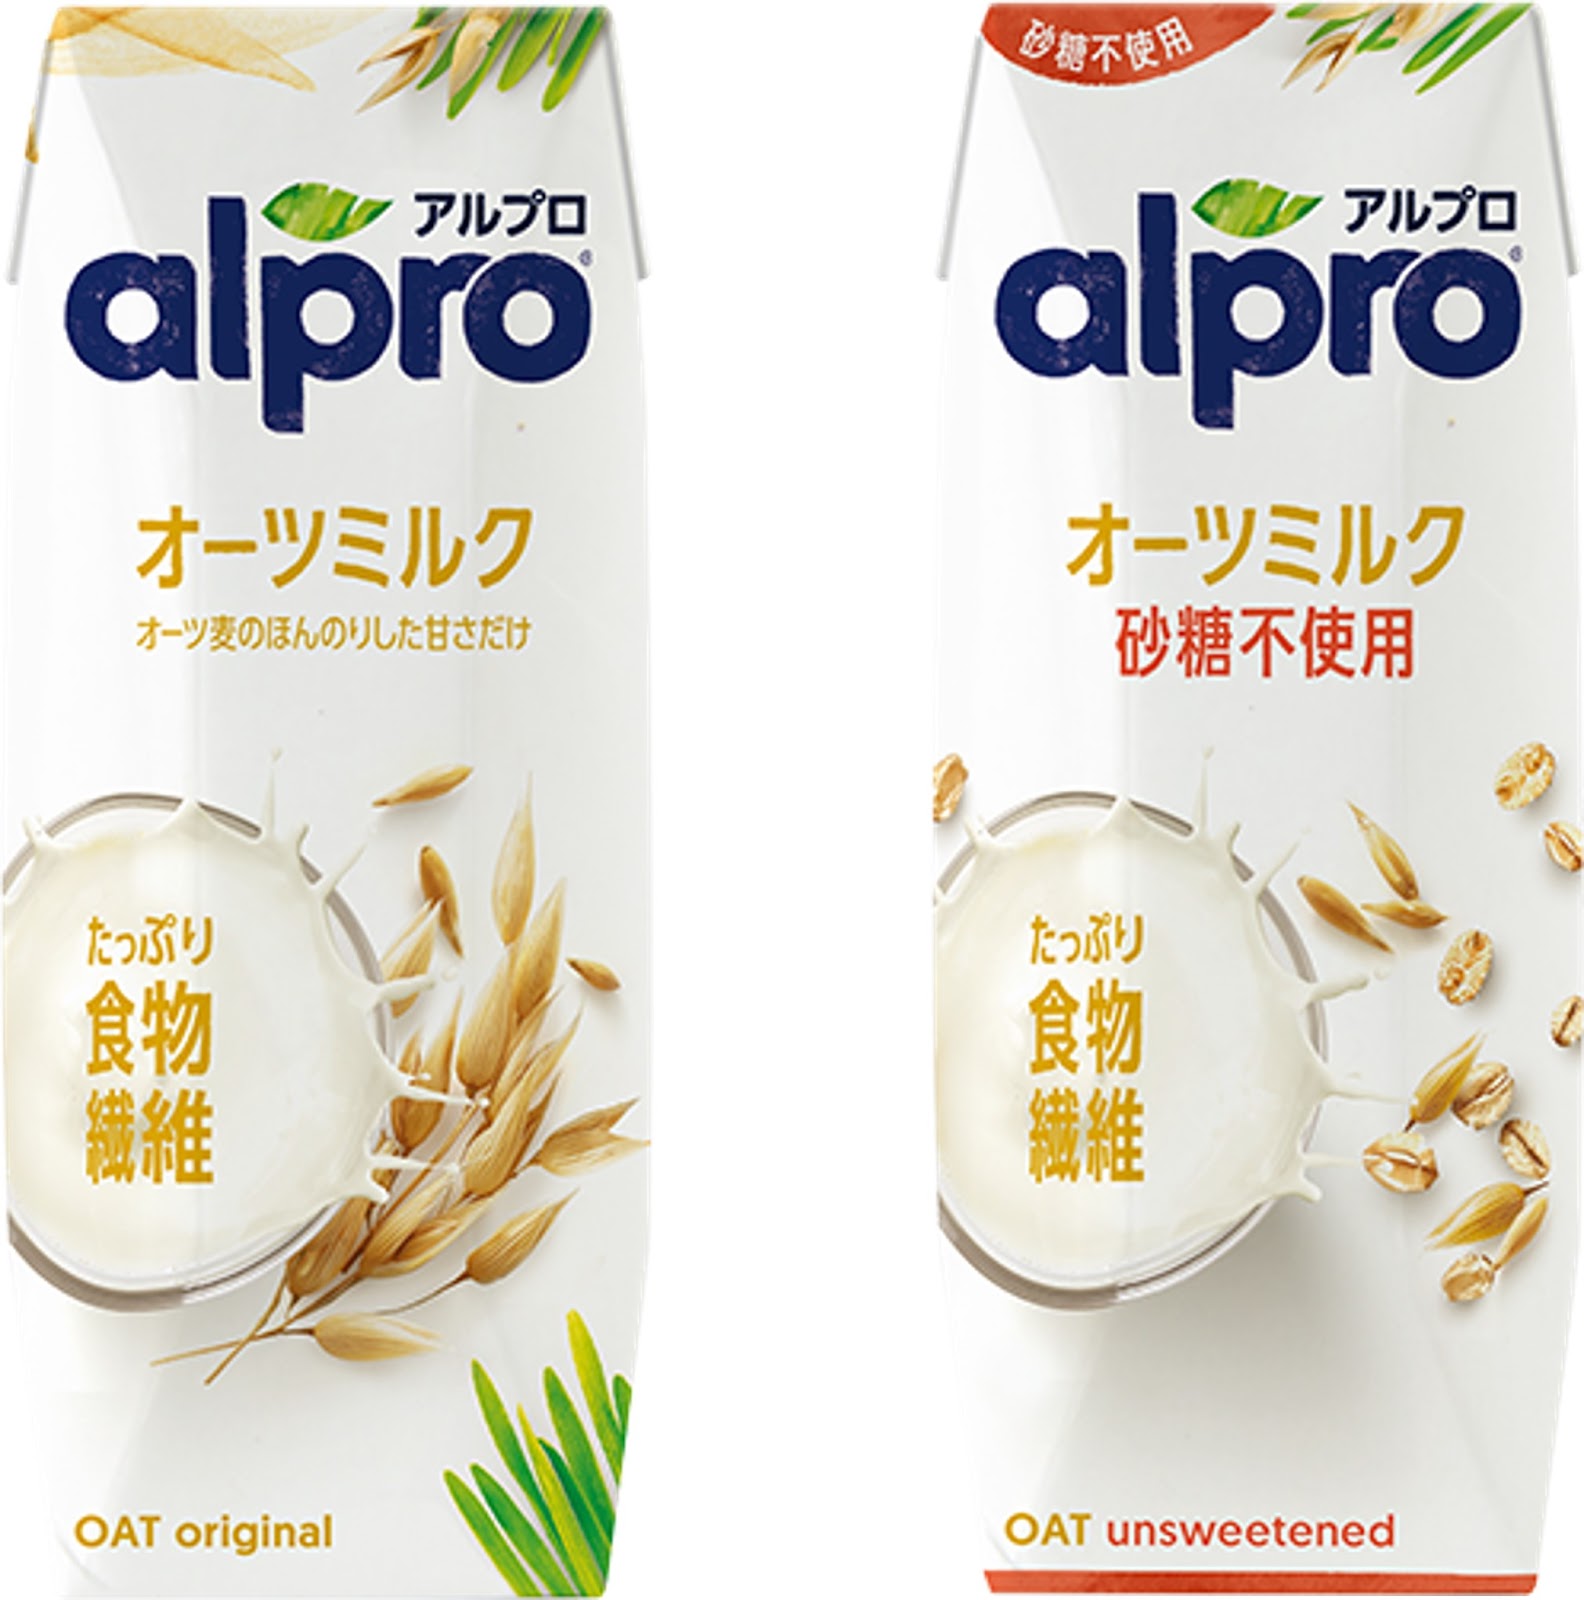 alpro（アルプロ）のオーツミルク画像